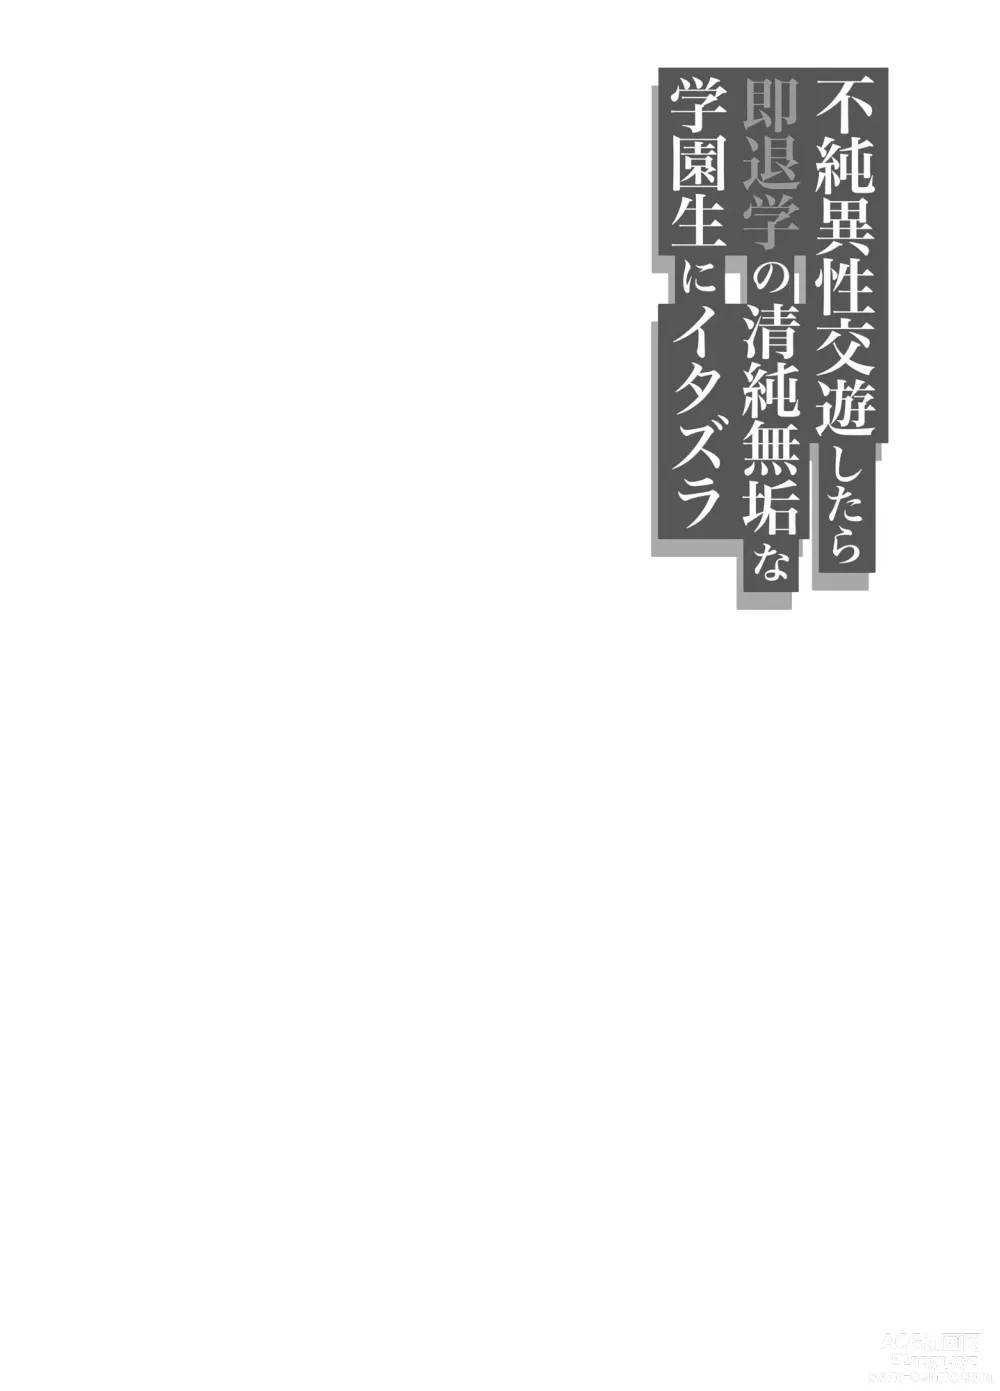 Page 35 of doujinshi 불순 이성 교유를 하면 즉시퇴학인 청순무구한 여고생에게 장난치기